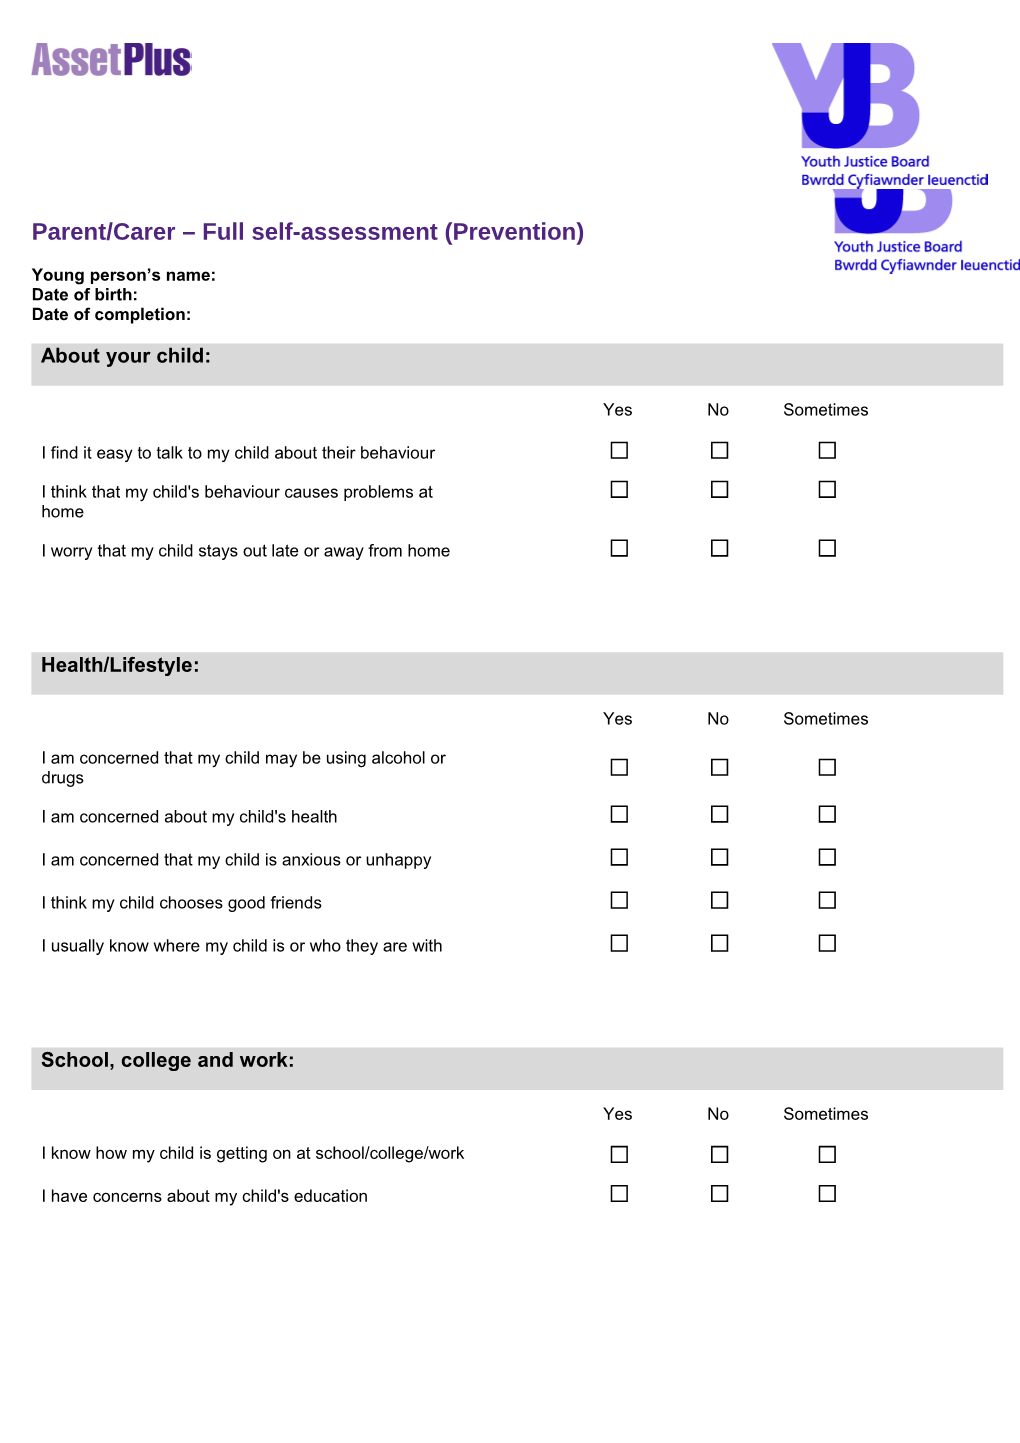 Parent/Carer Full Self-Assessment (Prevention)